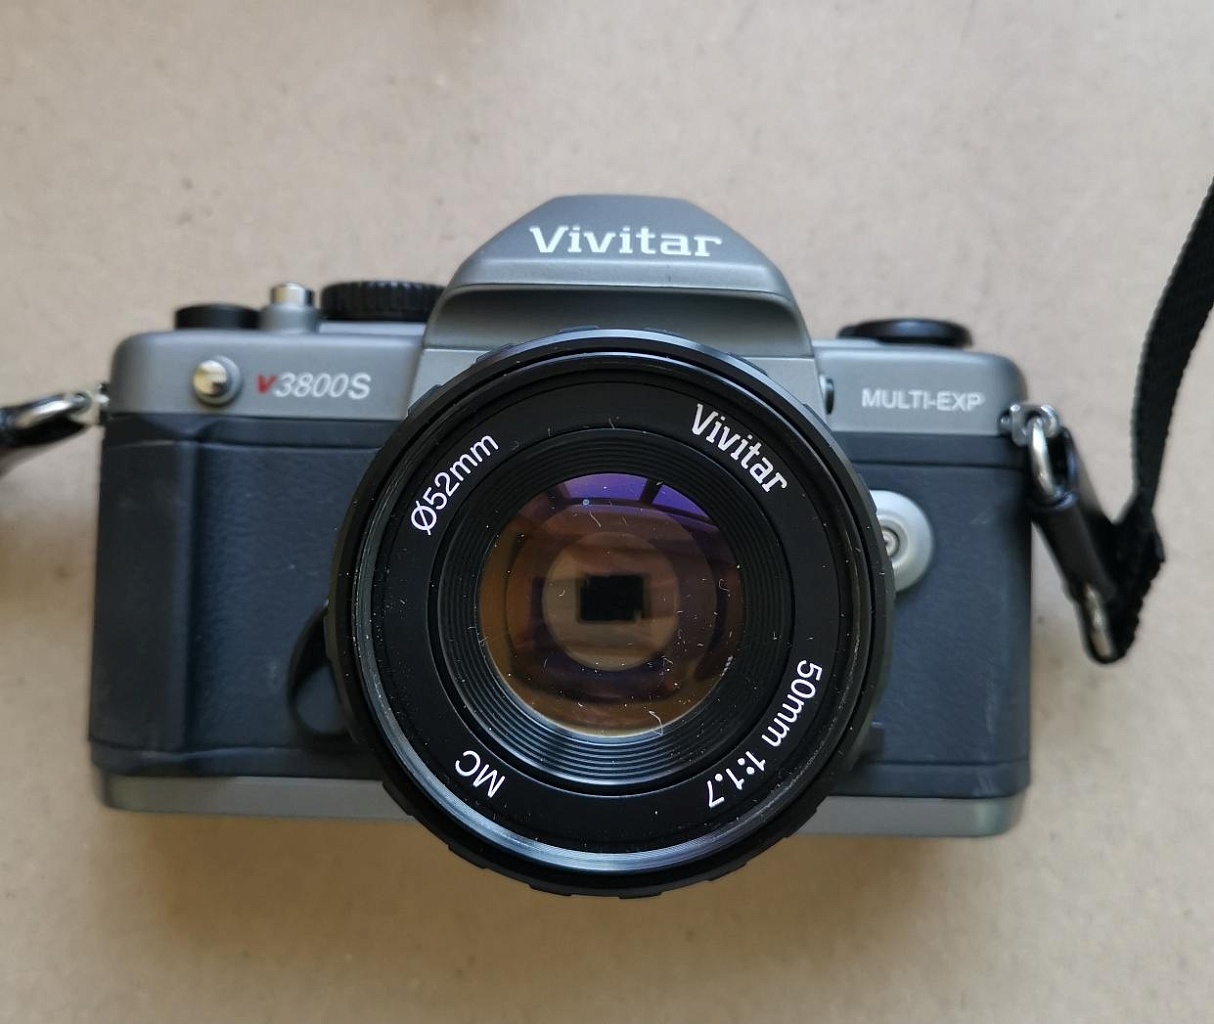 Vivitar v3800s + Vivitar MC 50 mm f/1.7 фото №1